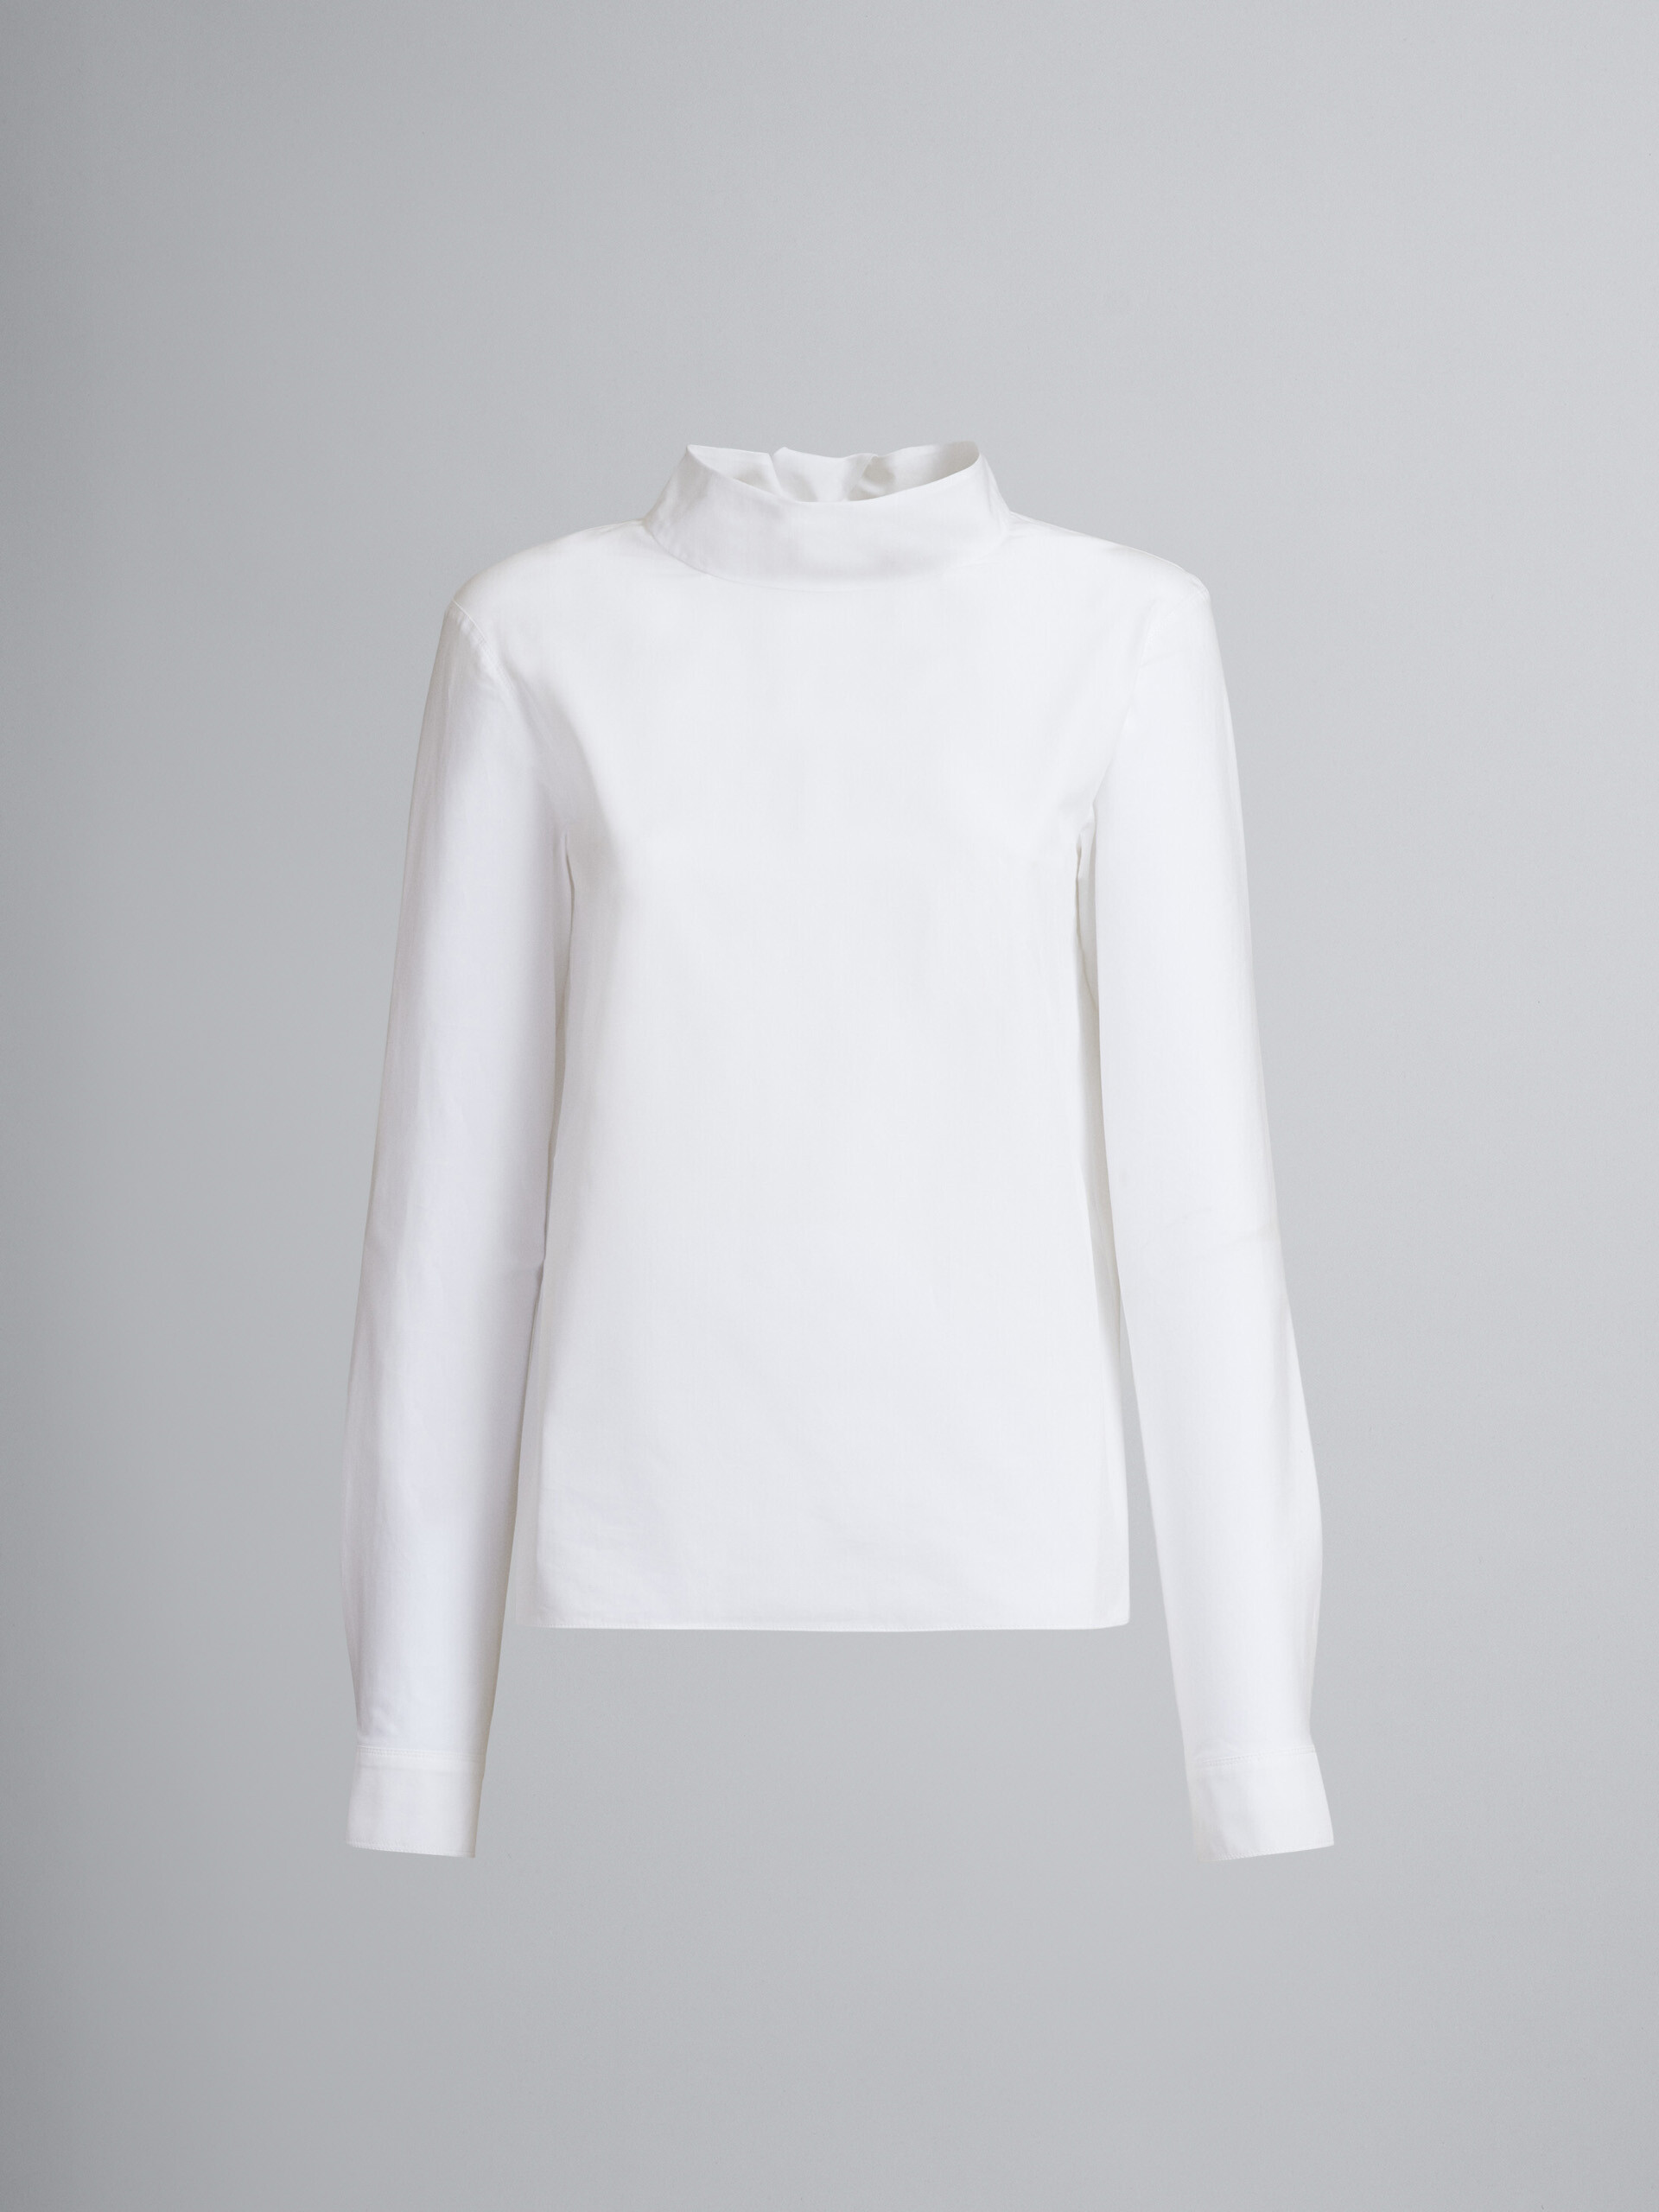 Blusa blanca de popelina de algodón con cuello con chalina anudado en la espalda - Camisas - Image 1